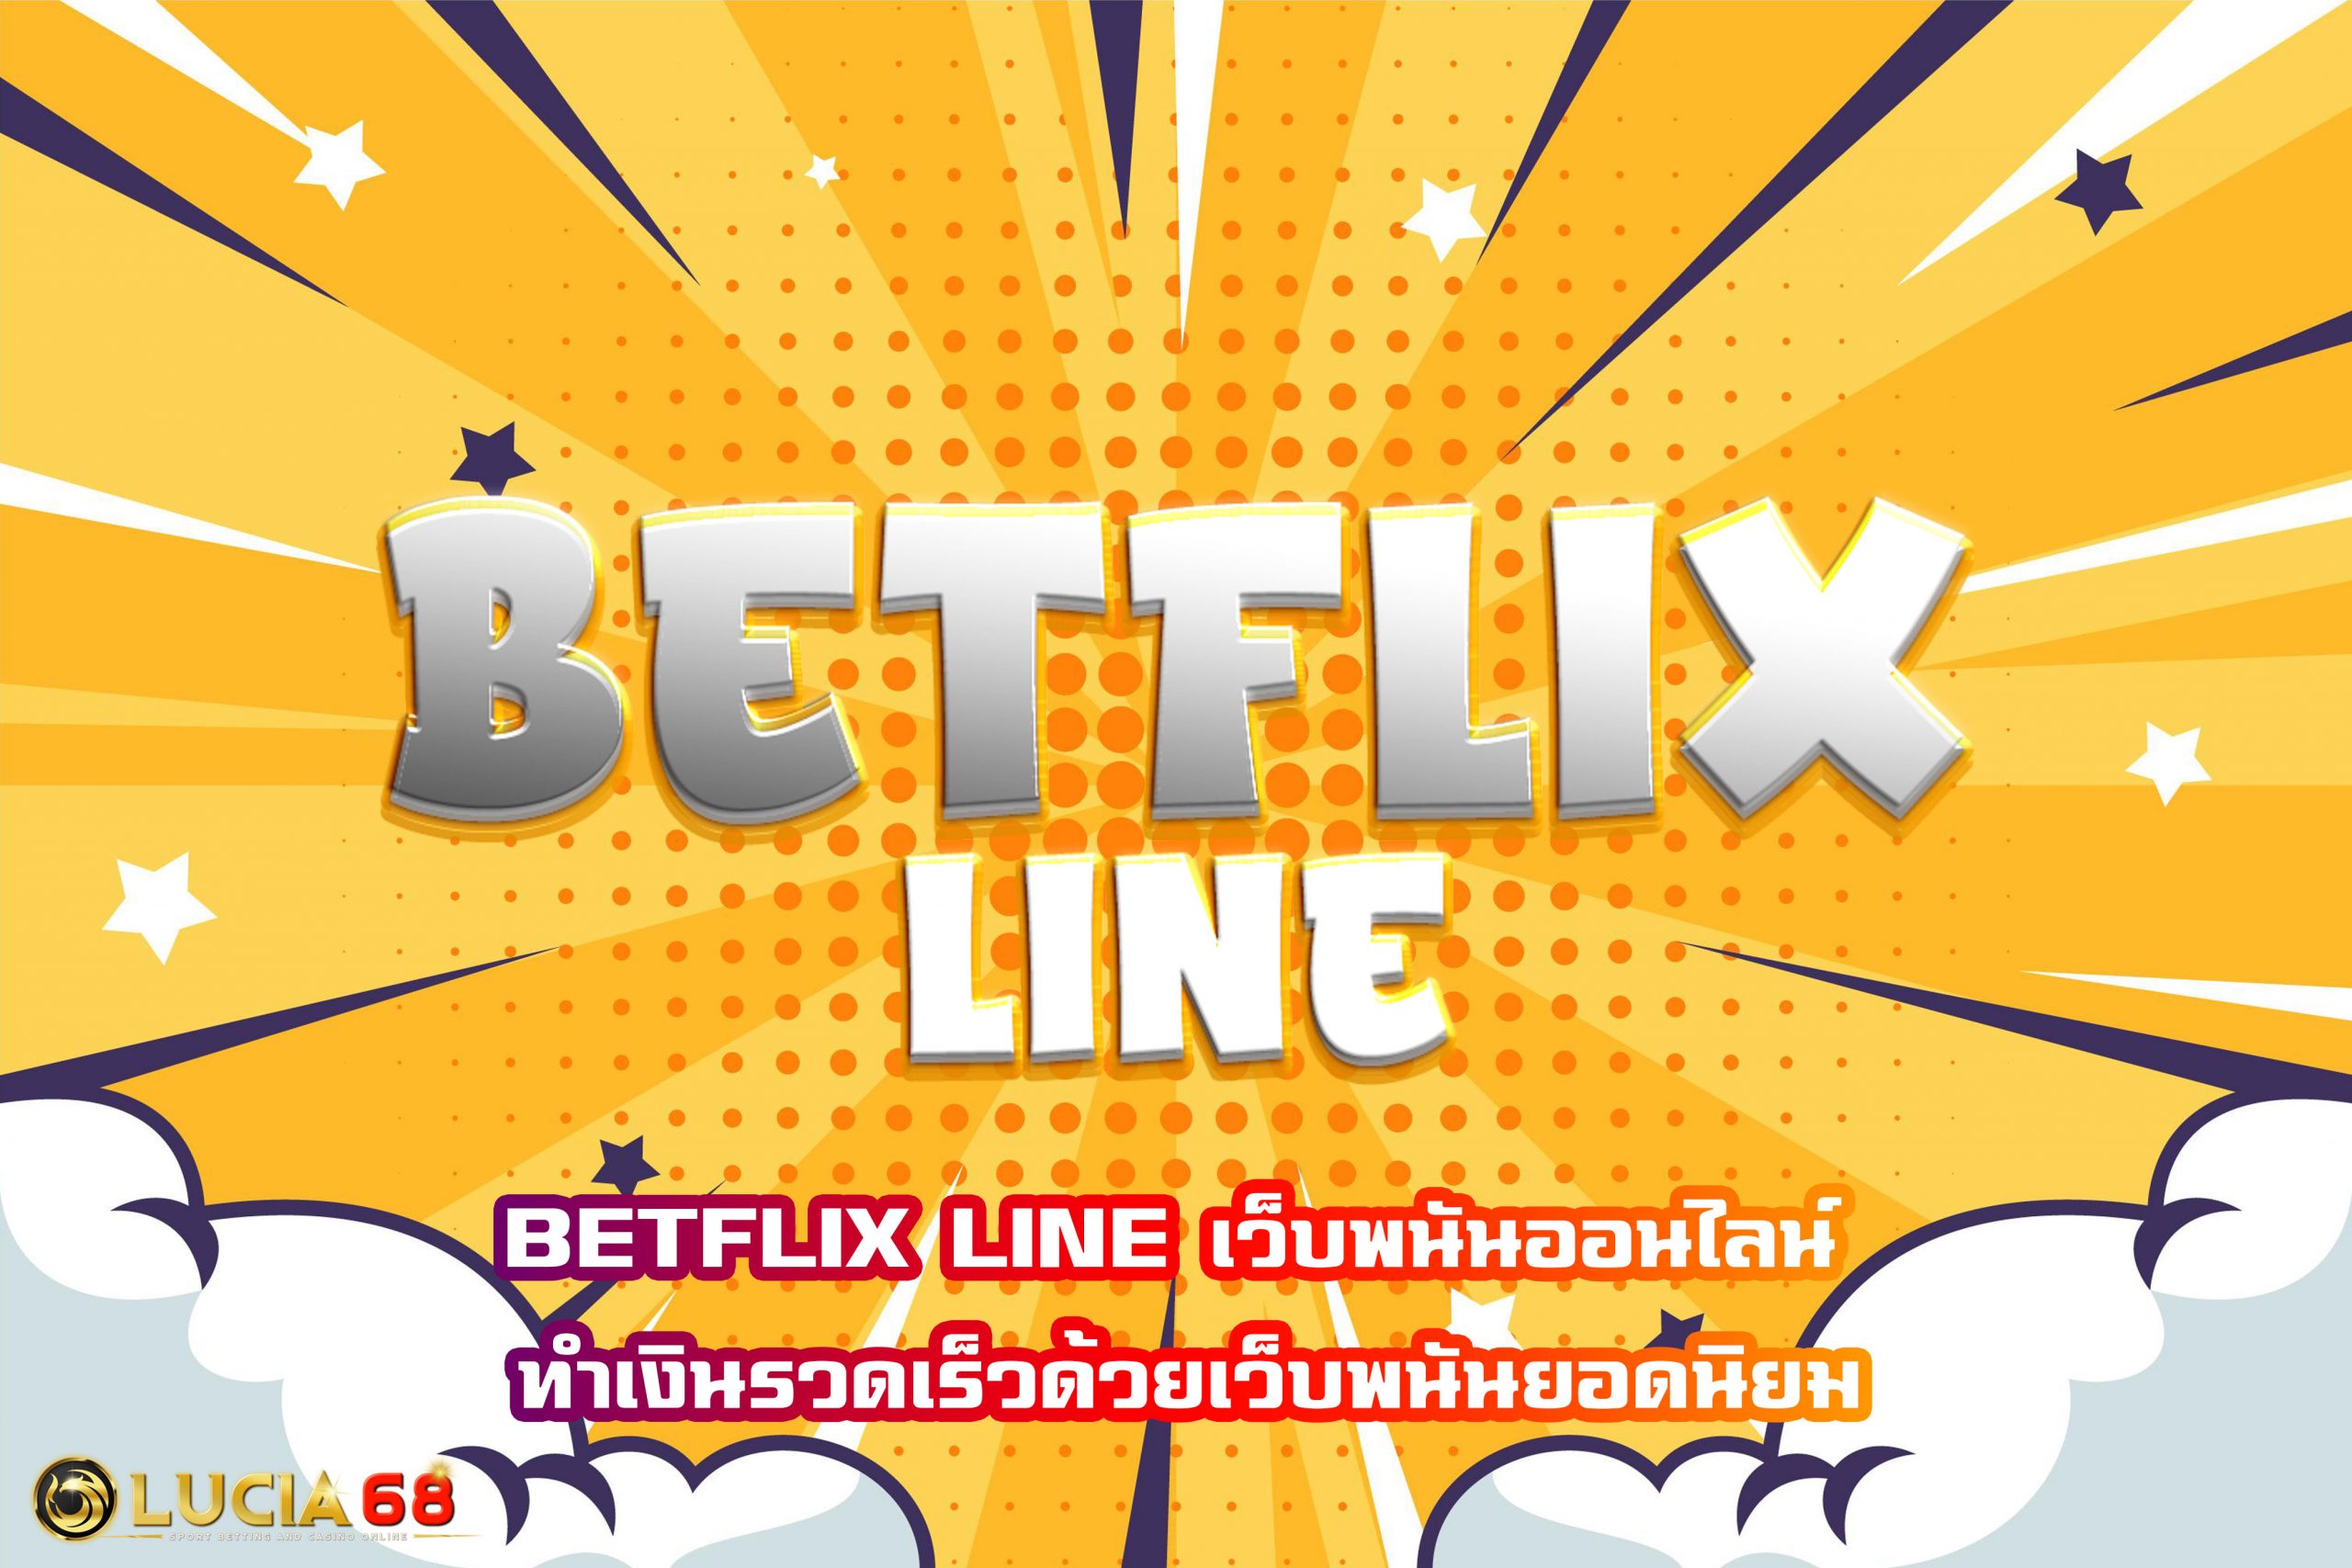 BETFLIX LINE เว็บพนันออนไลน์ ทำเงินรวดเร็วด้วยเว็บพนันยอดนิยม